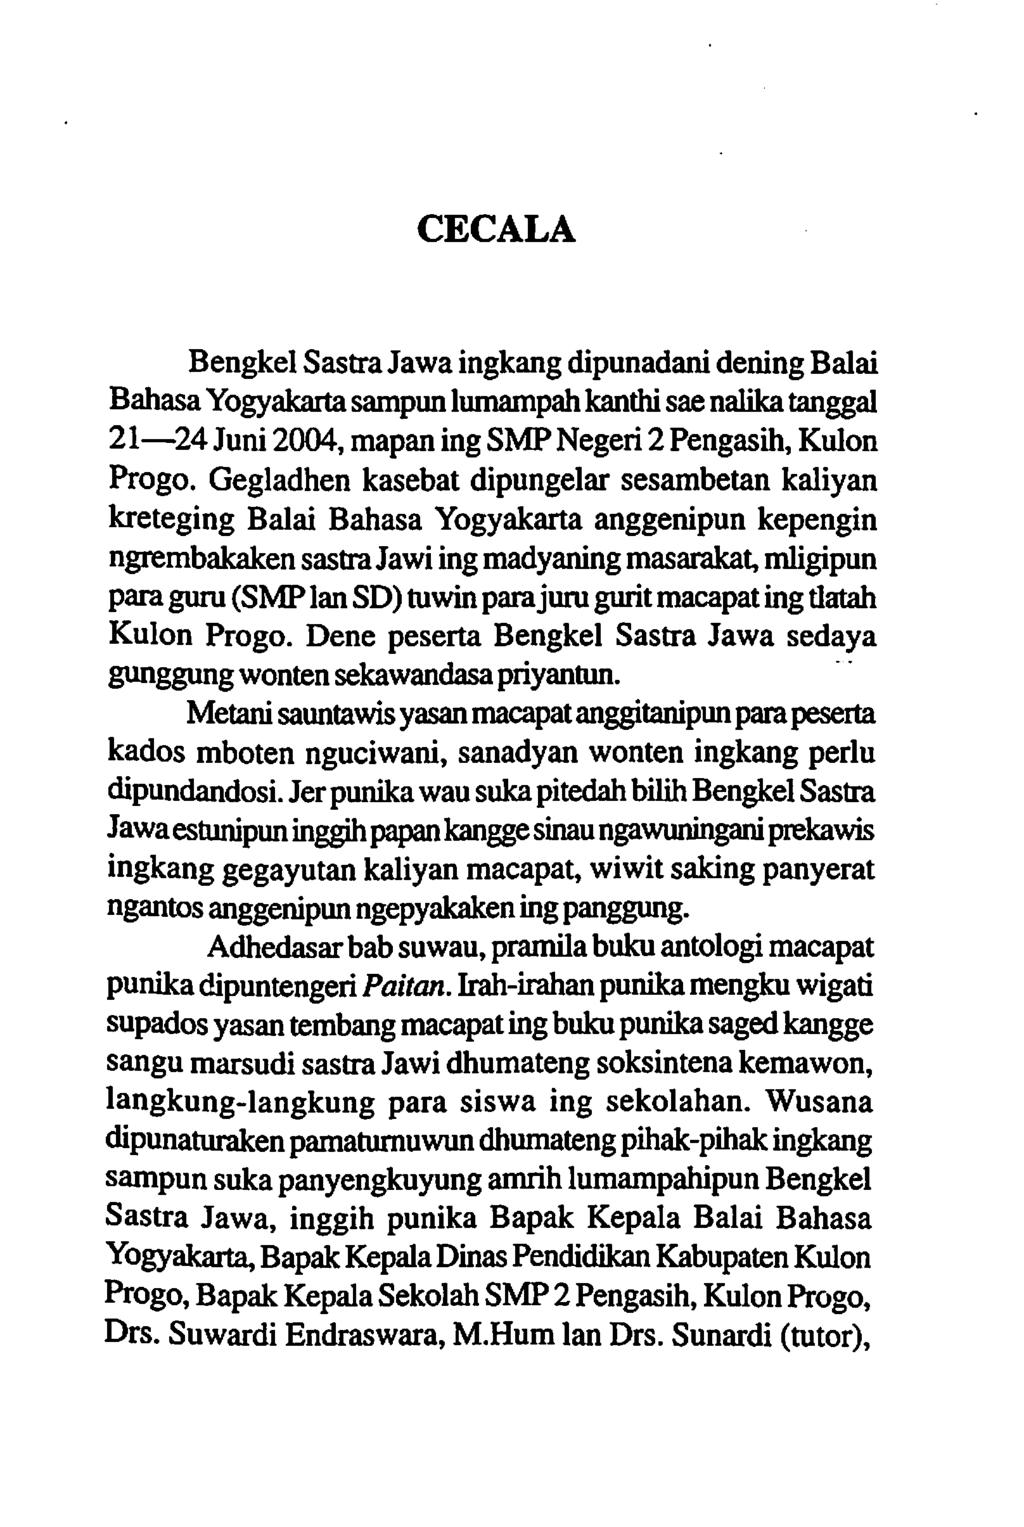 CECALA Bengkel Sastra Jawa ingkang dipunadani dening Balai Bahasa Yogyakaita sampun lumampah kanthi sae nalika tanggal 21 24 Juni 2004, mapan ing SMP Negeii 2 Pengasih, Kulon Progo.